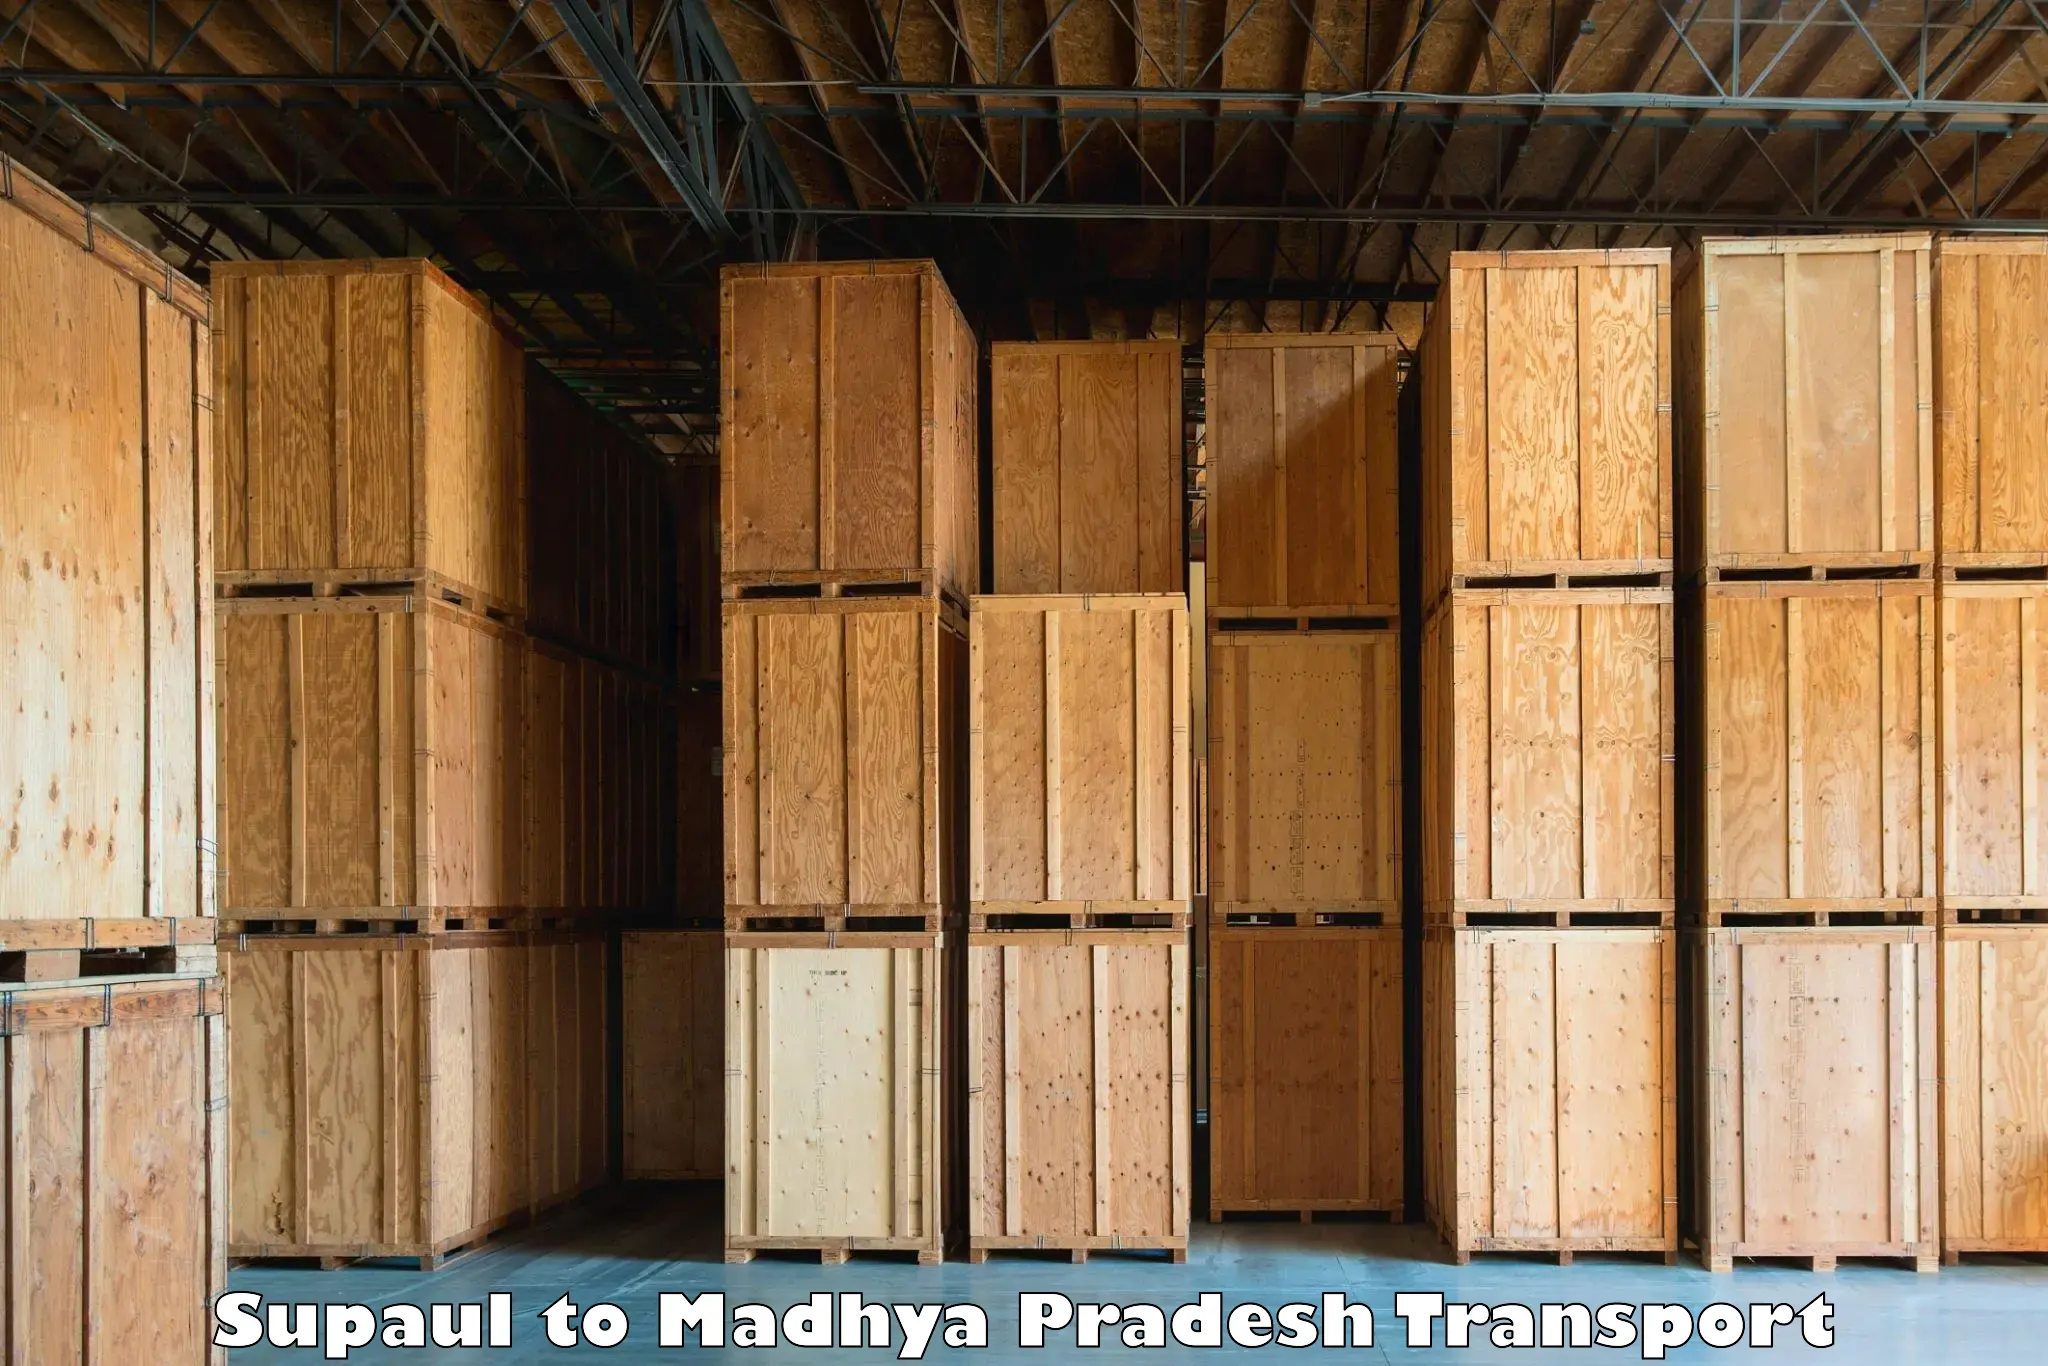 Truck transport companies in India Supaul to Madhya Pradesh